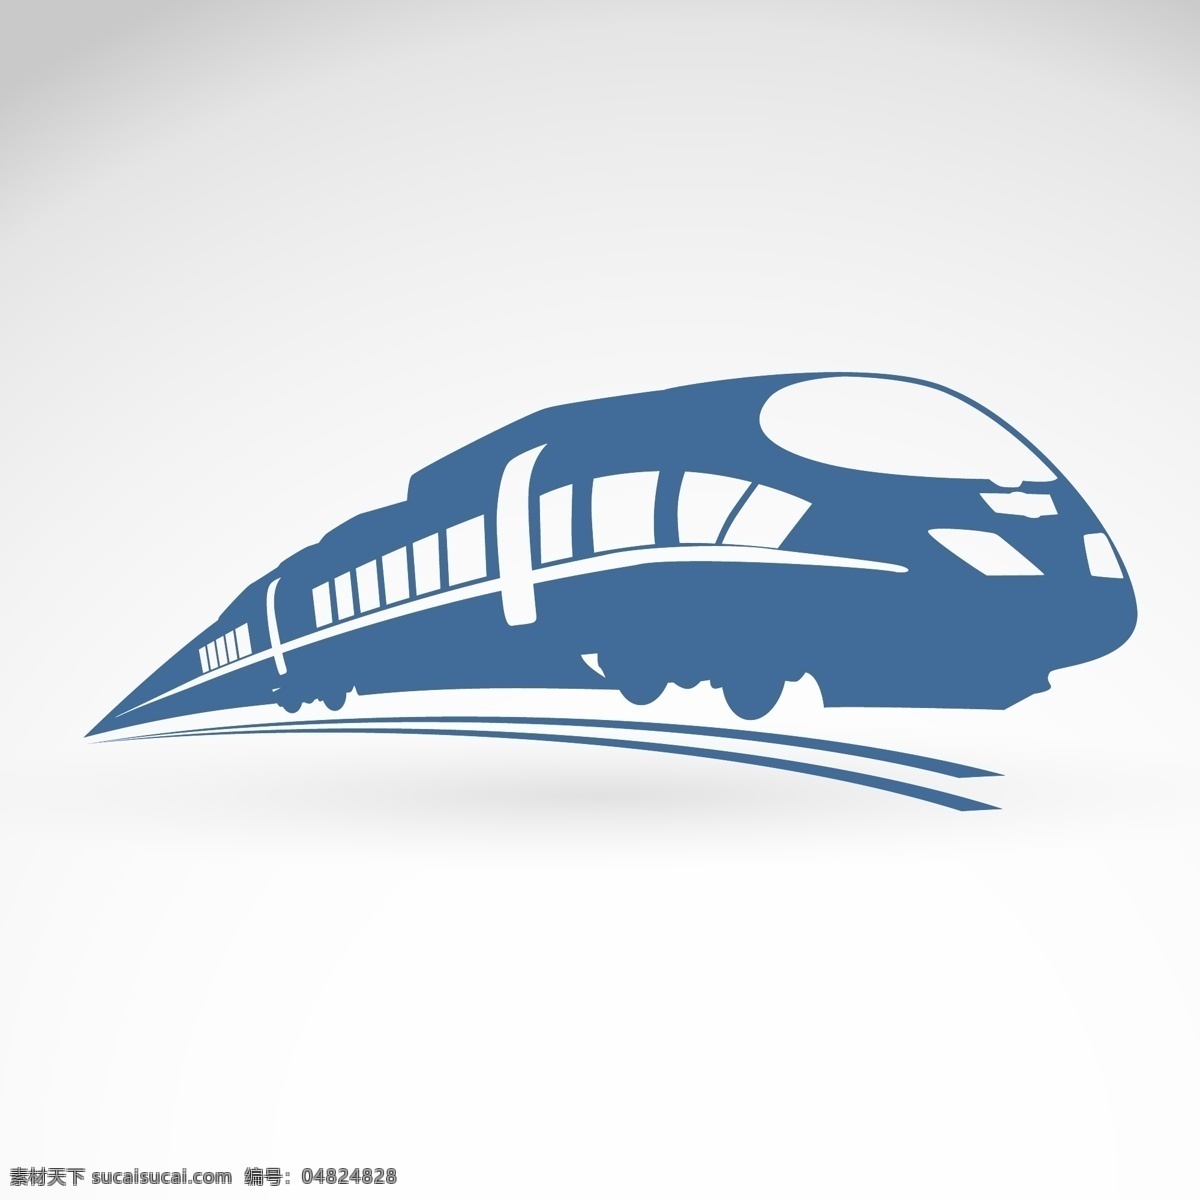 创意 火车 铁路 标志 图标 动车 插画 背景 交通工具 海报 画册 生活百科 创意图 现代科技